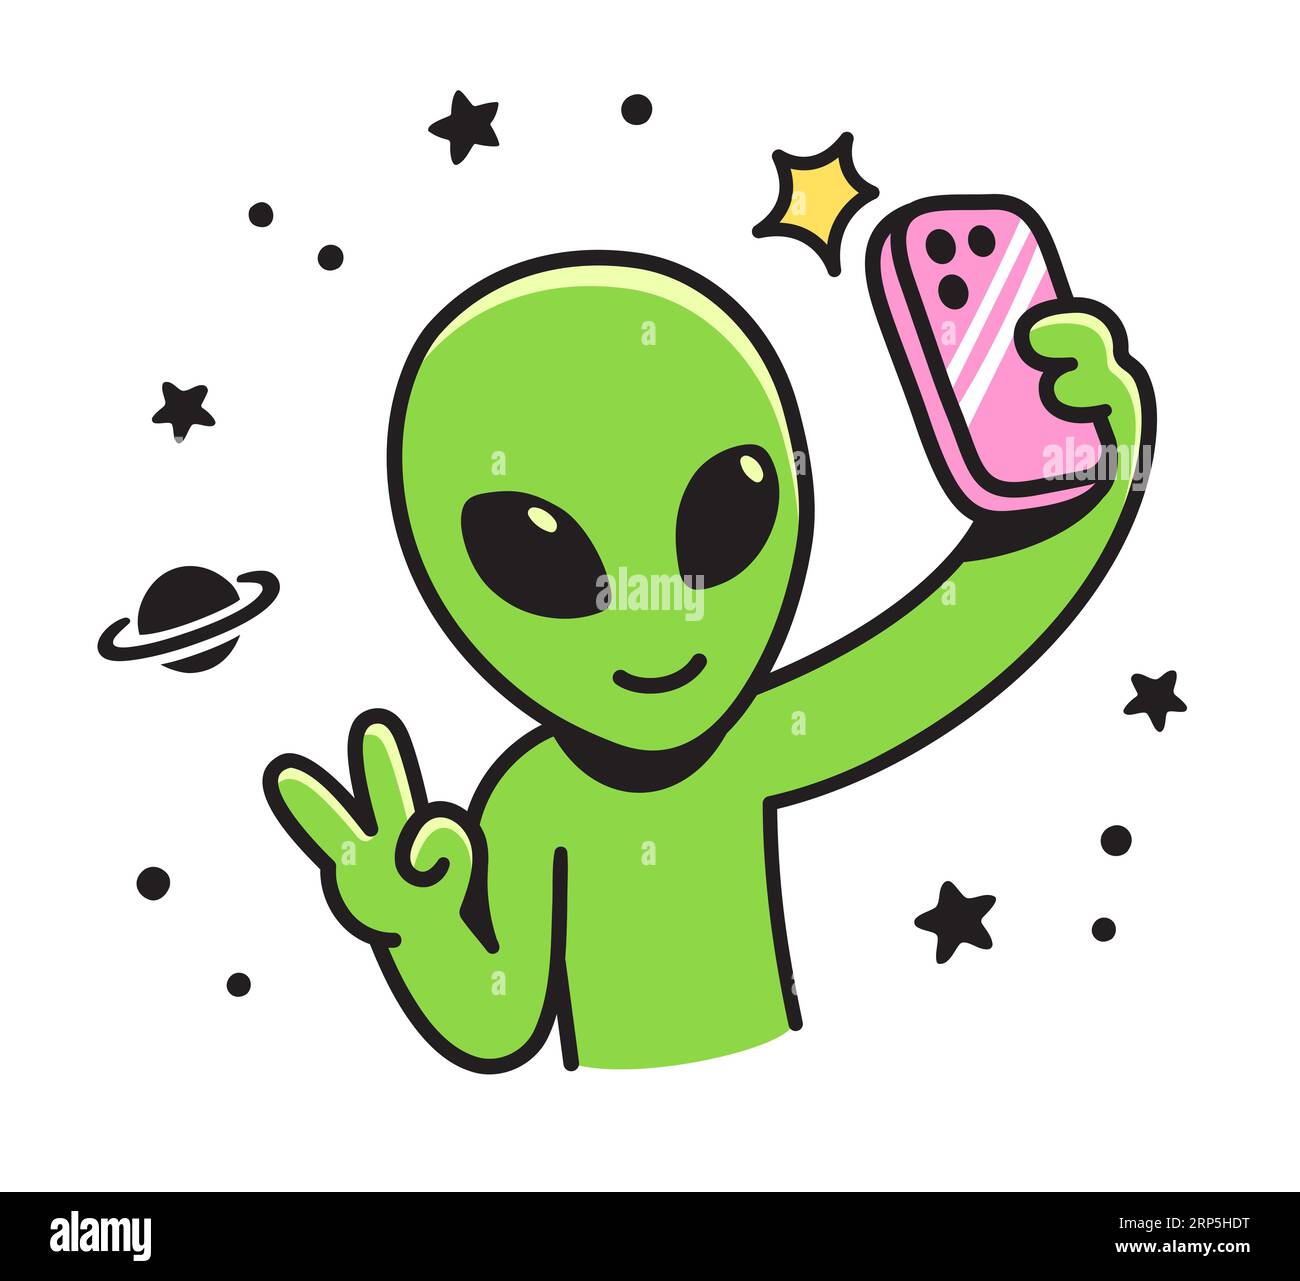 Mignon personnage alien de dessin animé prend selfie avec le téléphone. Illustration vectorielle drôle. Illustration de Vecteur